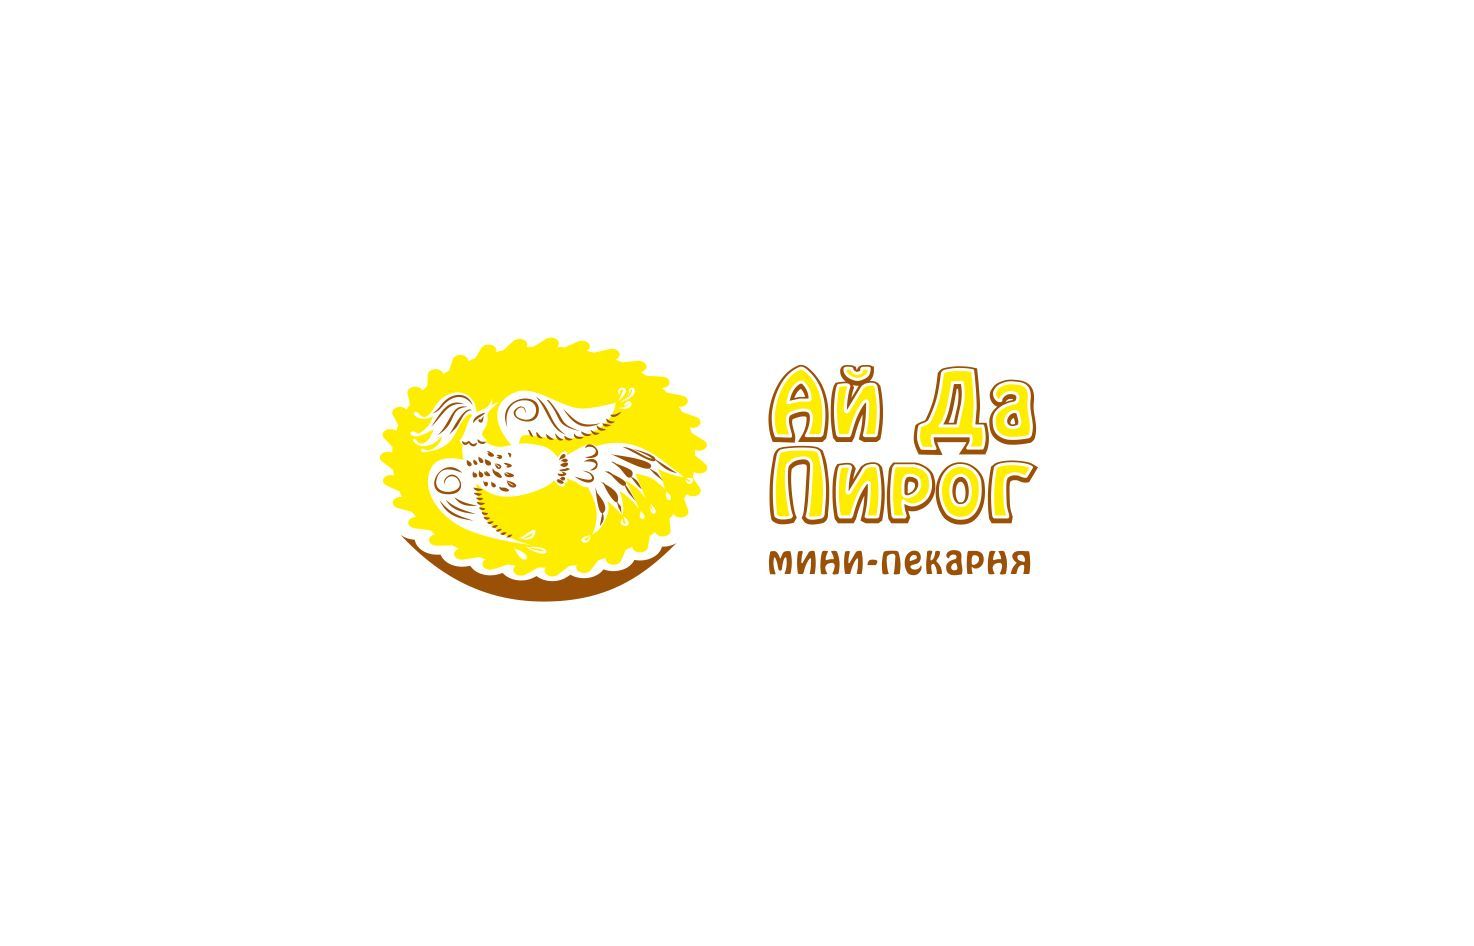 Логотип для пироговой 